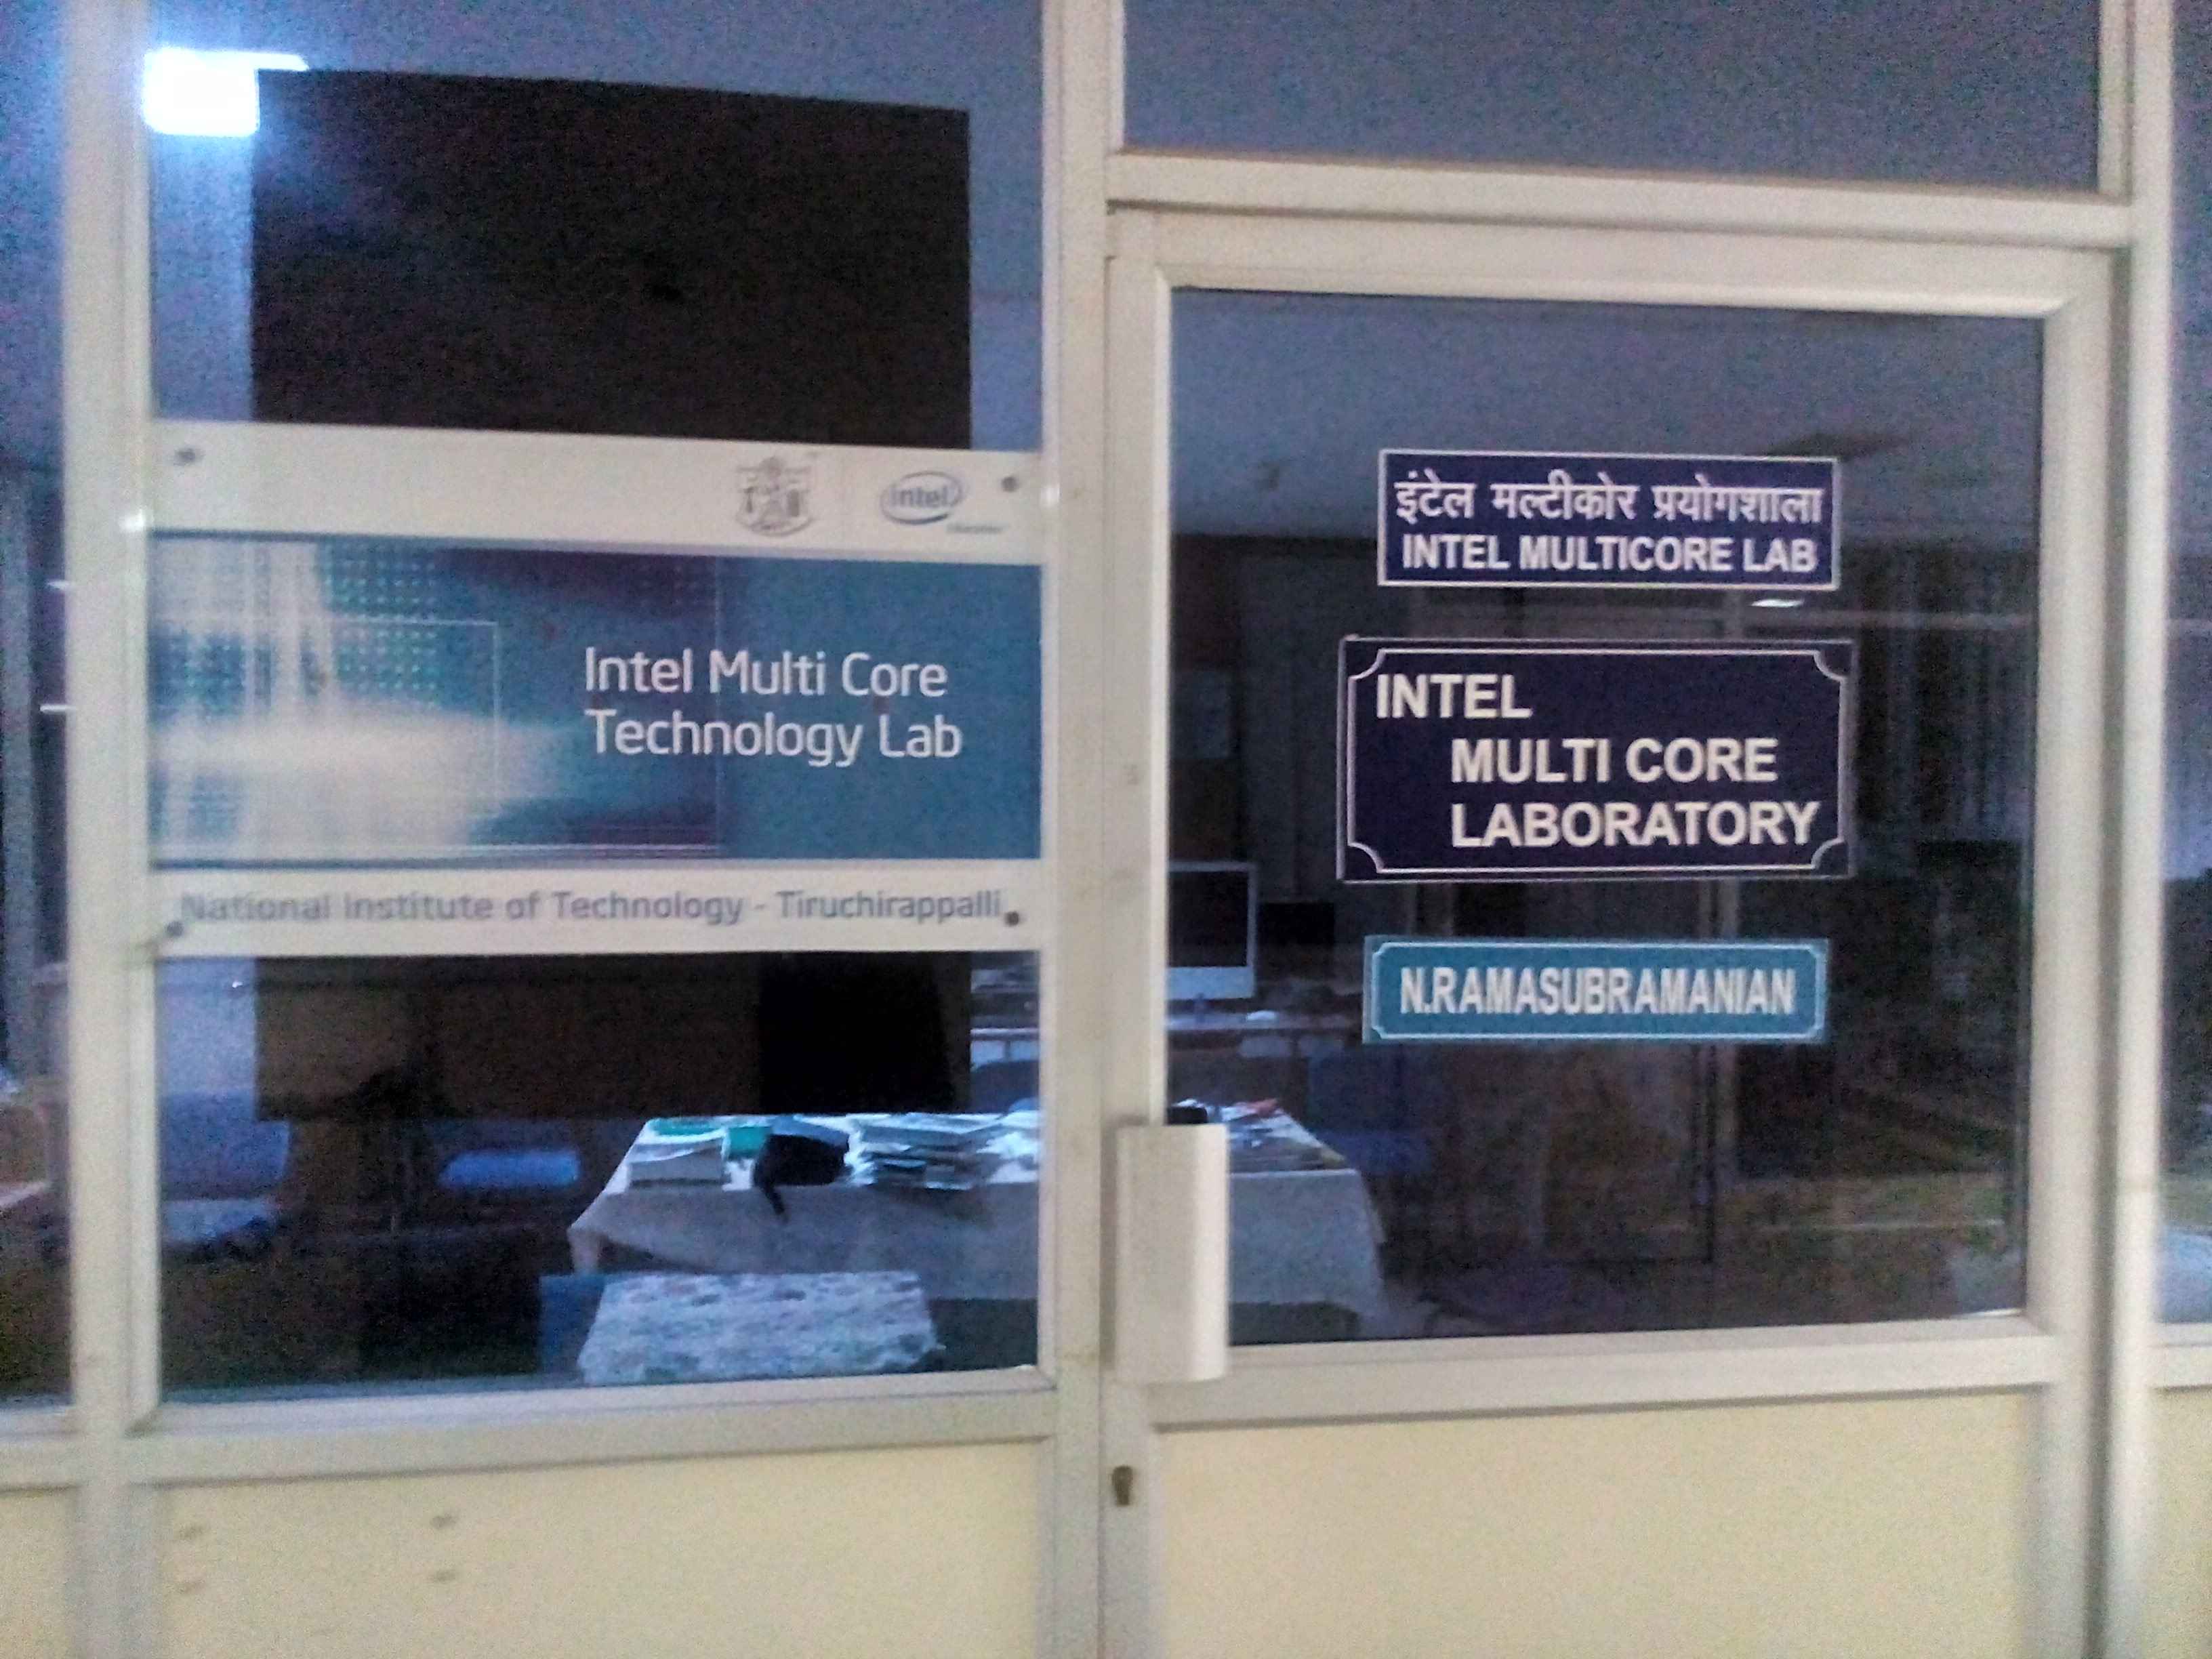 NIT Trichy - Intel Multicore Lab